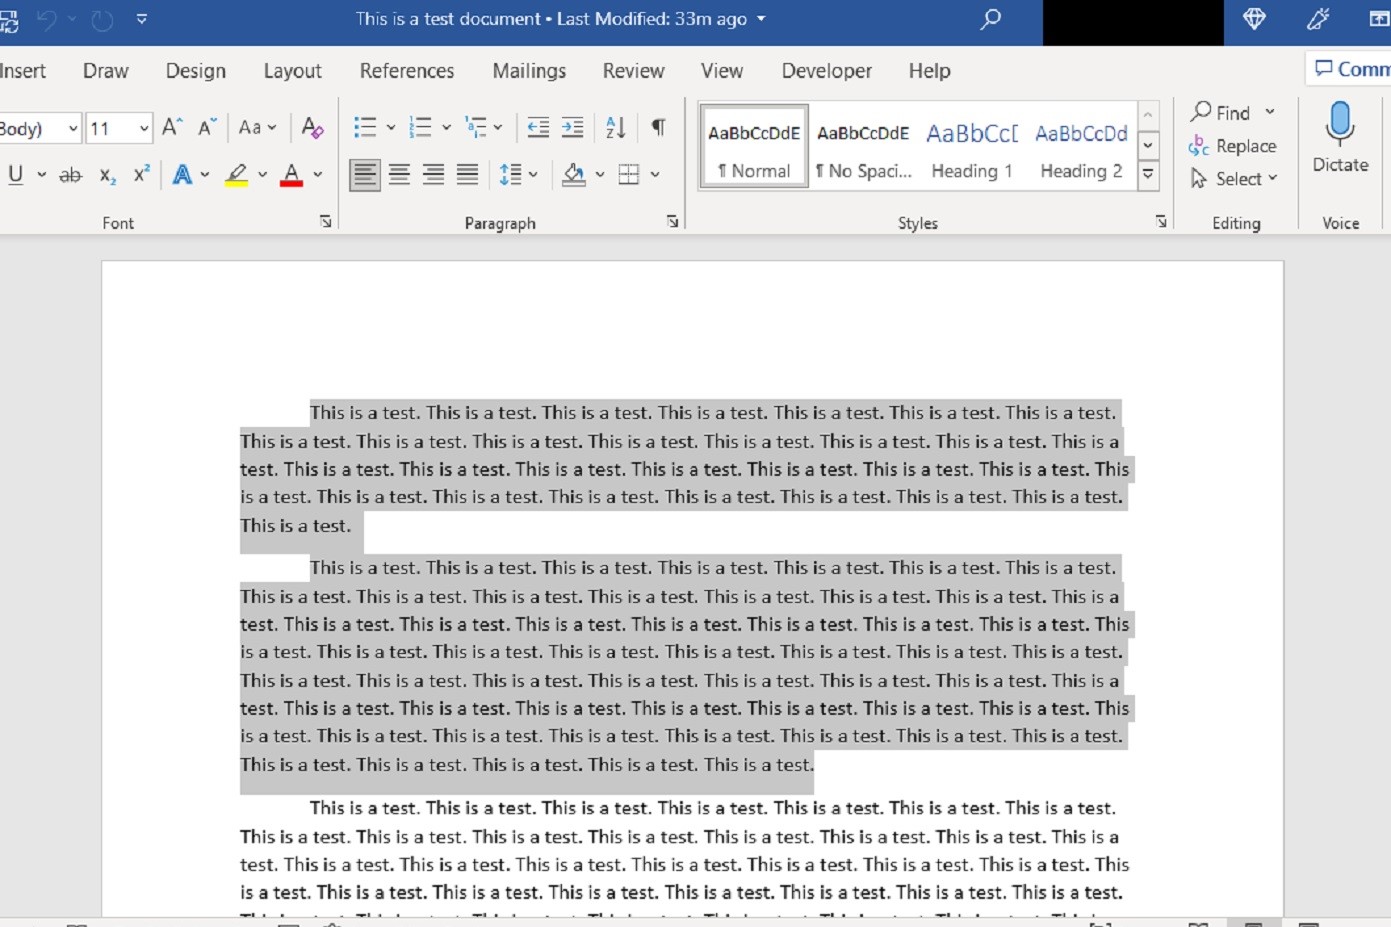 تصویری از برنامه دسکتاپ Microsoft Word که دو پاراگراف انتخاب شده را نشان می دهد.